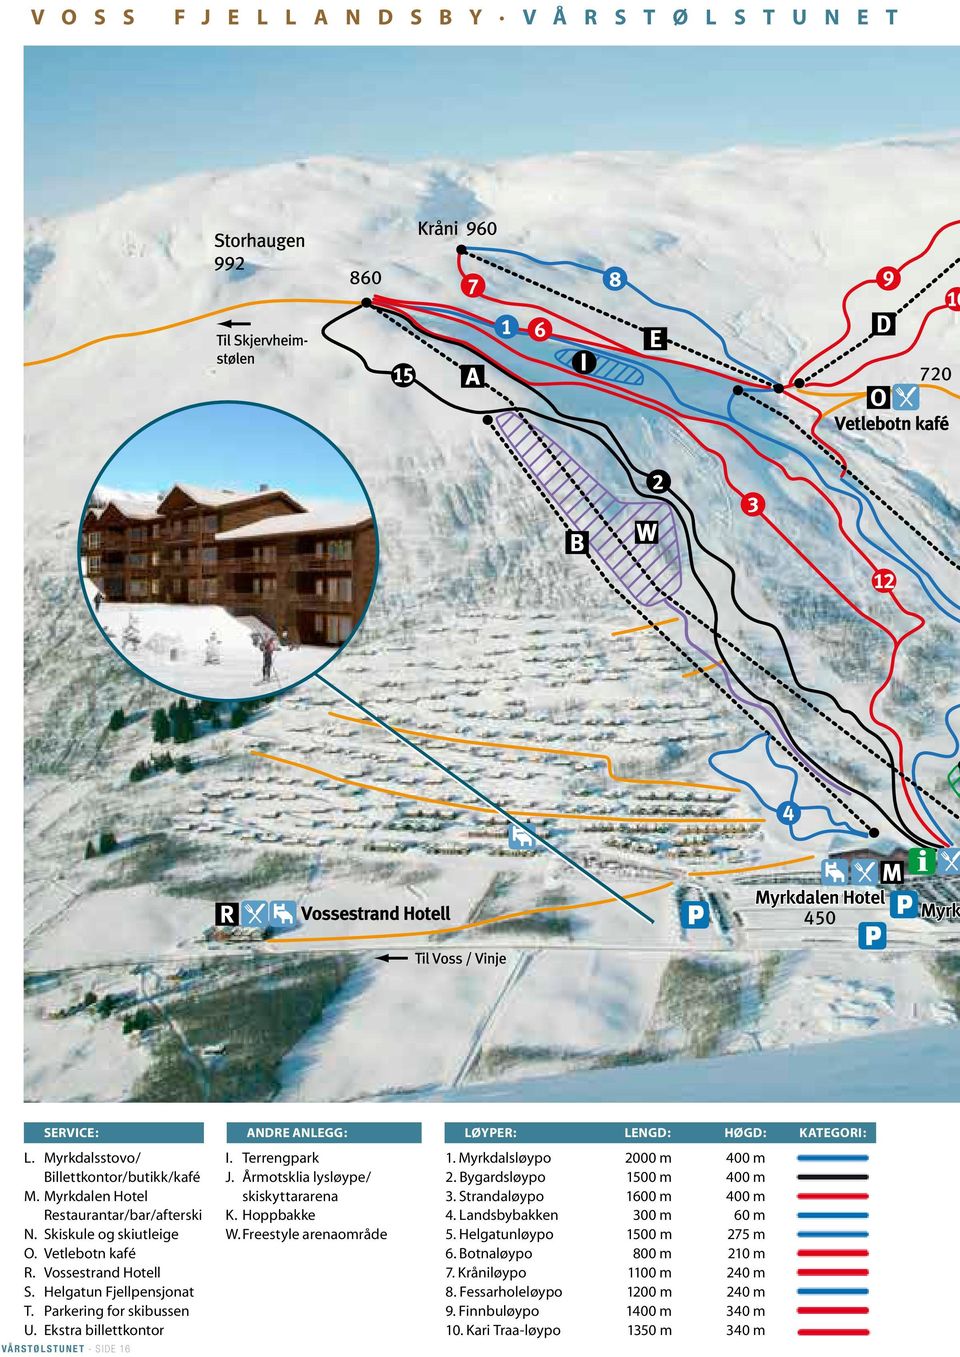 Skiskule og skiutleige W. Freestyle arenaområde 5. Helgatunløypo 1500 m 275 m O. Vetlebotn kafé 6. Botnaløypo 800 m 210 m R. Vossestrand Hotell 7. Kråniløypo 1100 m 240 m S.